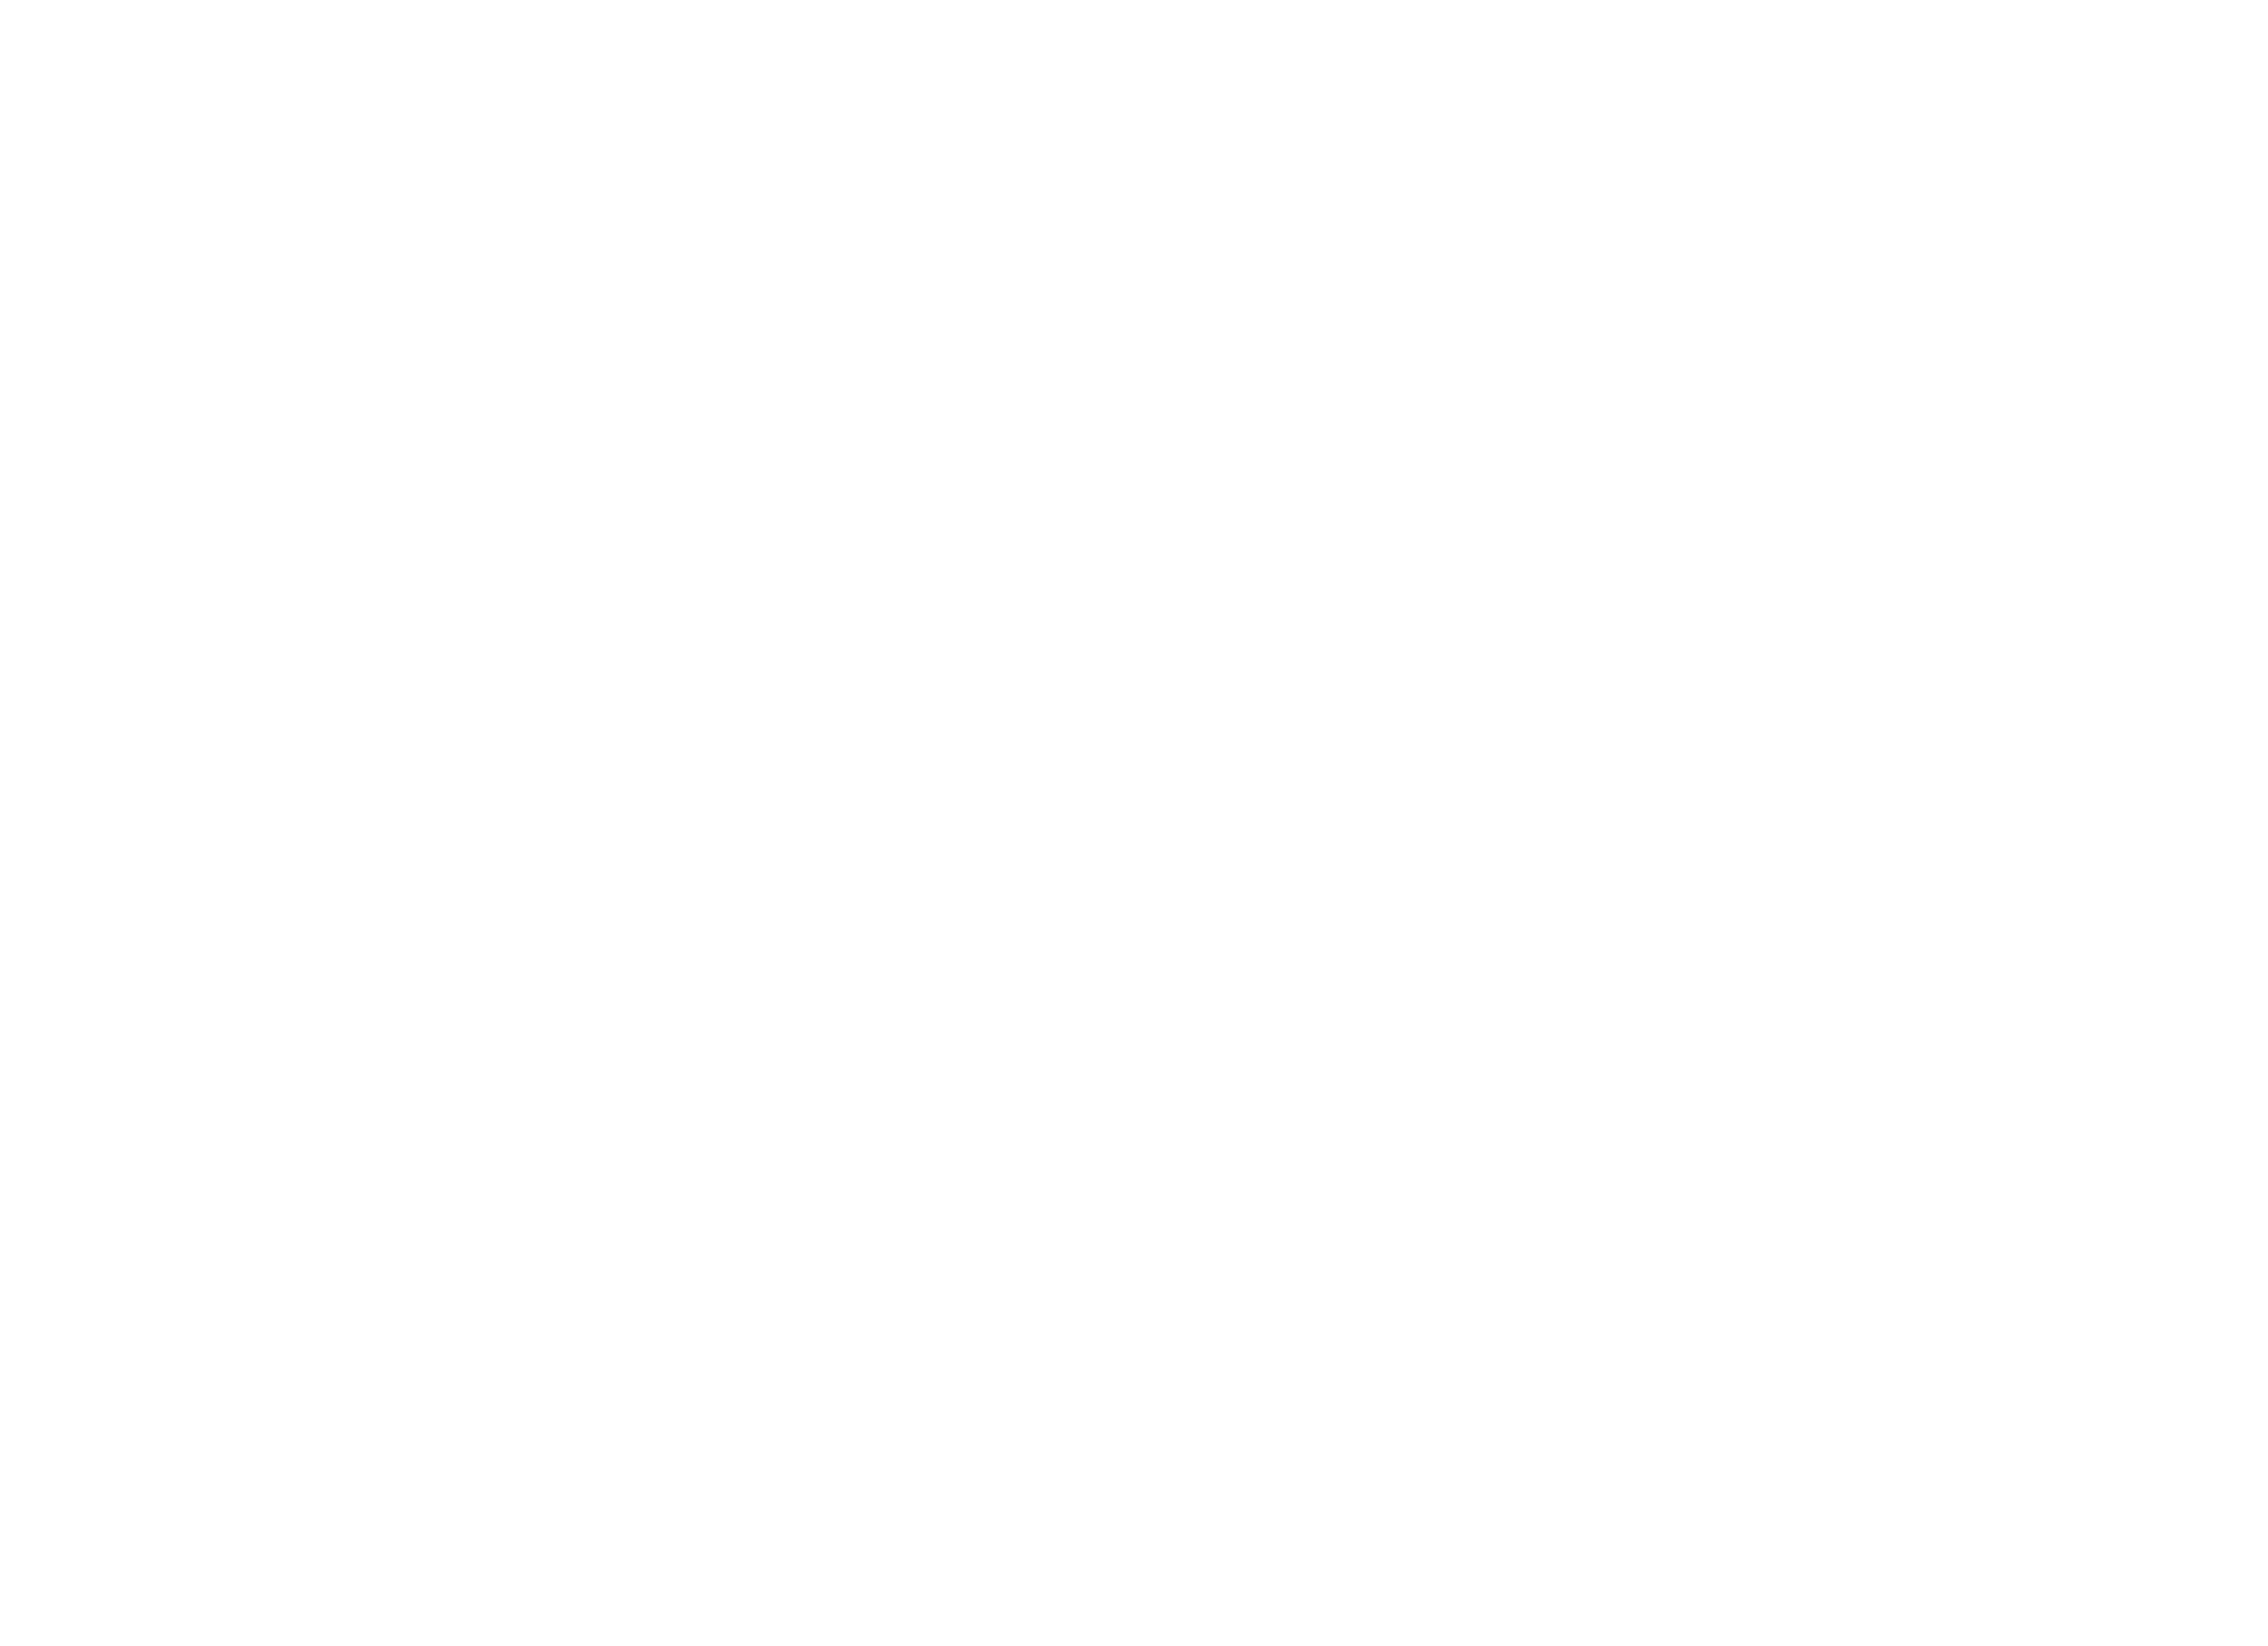 Münchner Künstlerhaus Logo